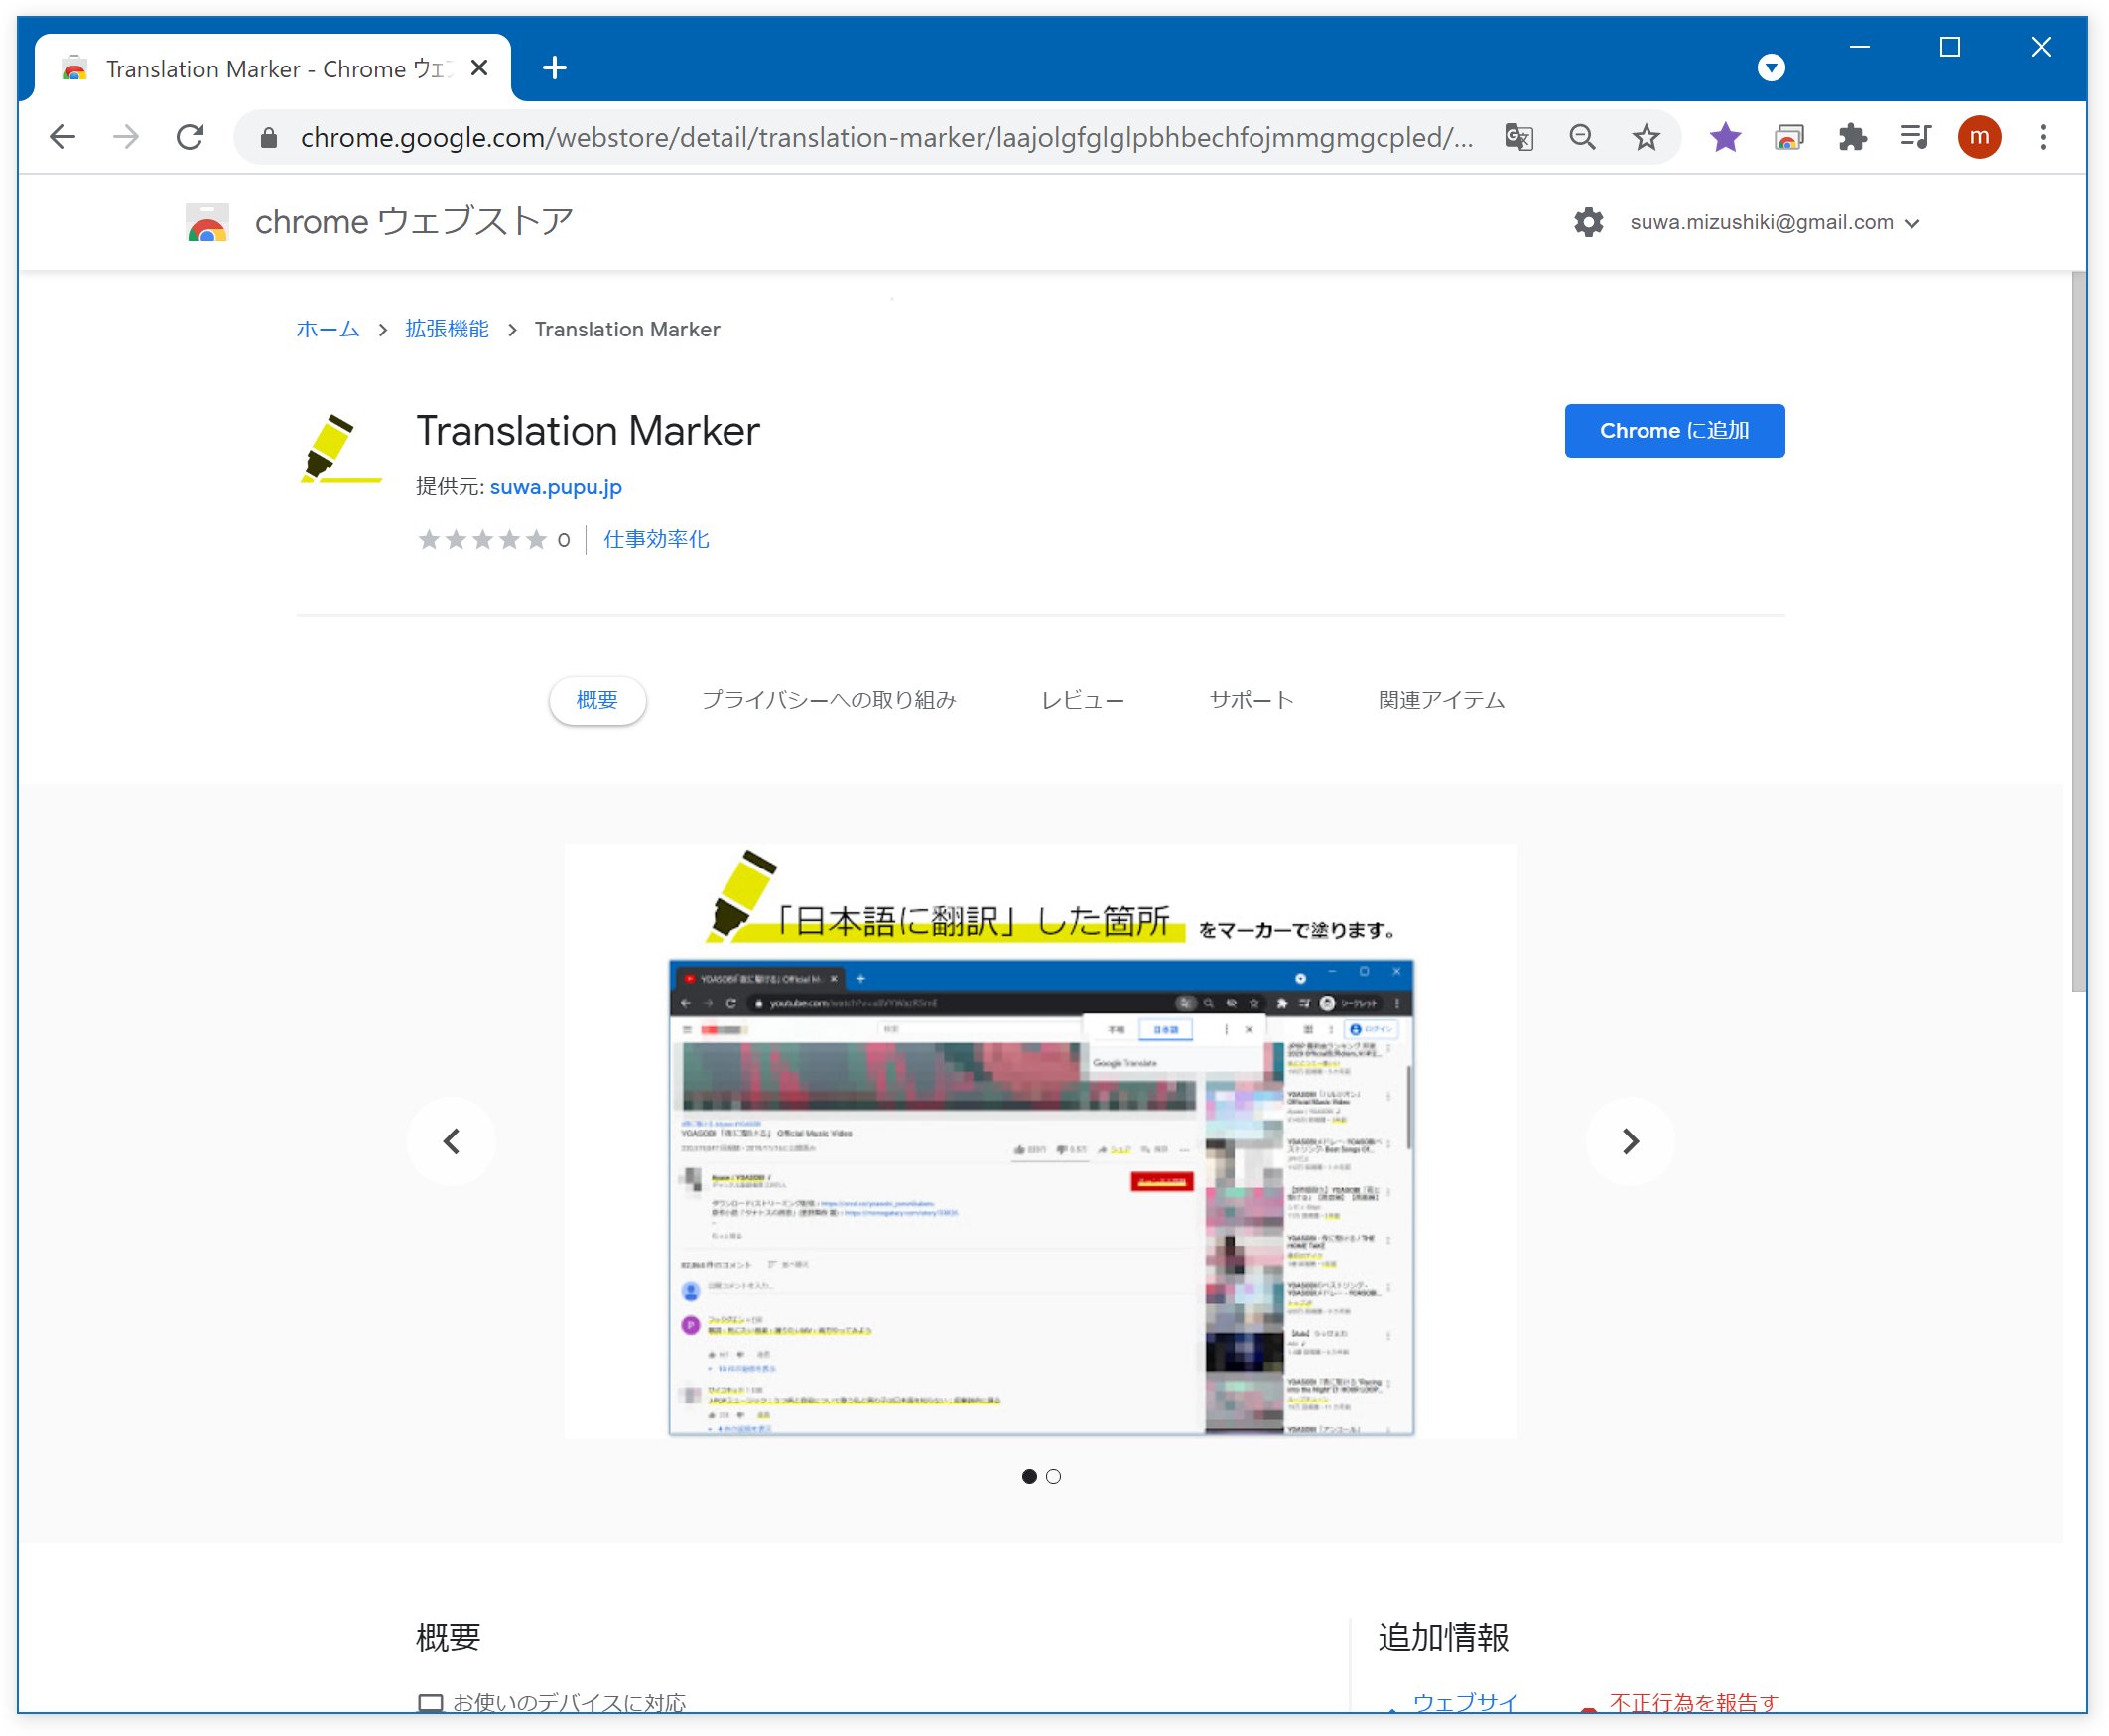 Mizushiki Translation Marker Chromeウェブストアに拡張機能を登録してみました T Co Atfzpldtl1 機能 ページを 日本語に翻訳 した際 翻訳箇所にマーカーを引きます Youtubeのコメント欄など日本語と英語の入り混じった場所で どれが